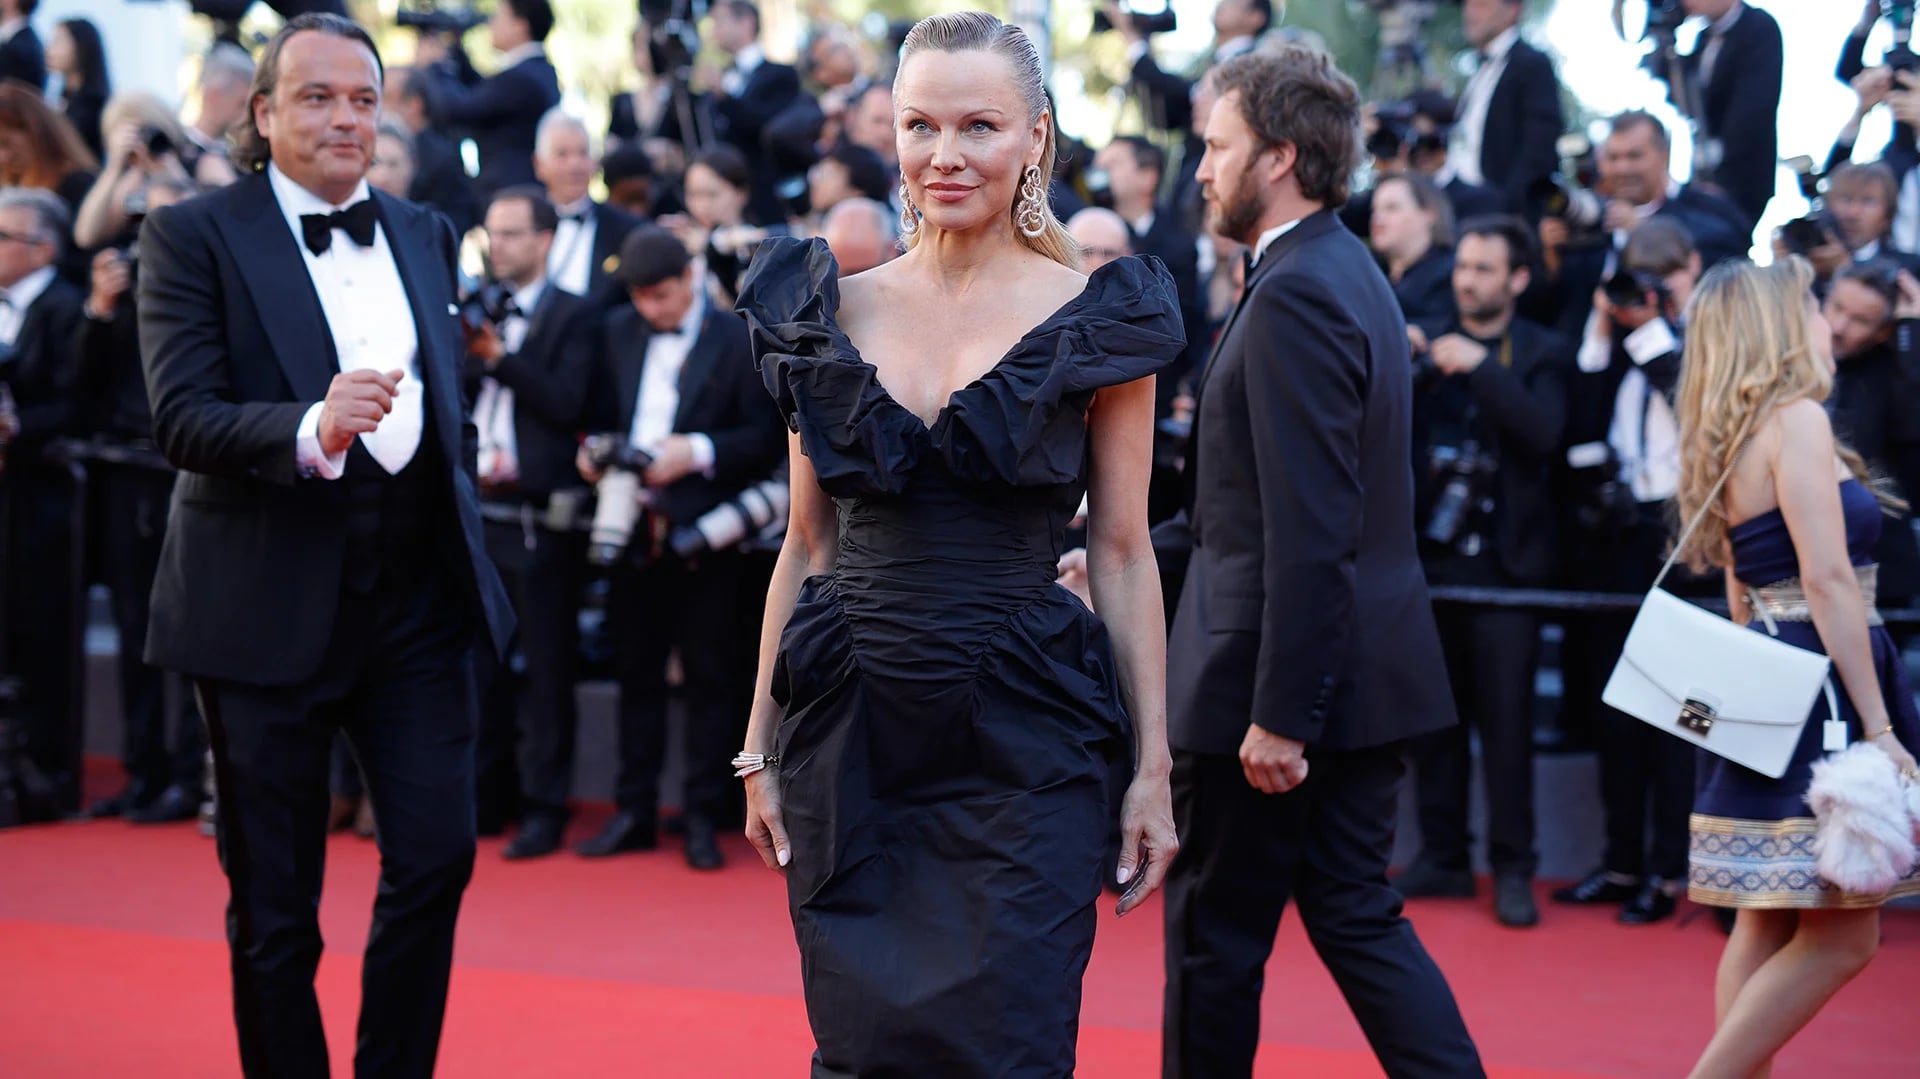 El look sobrio elegido por la estrella de Baywatch, Pamela Anderson